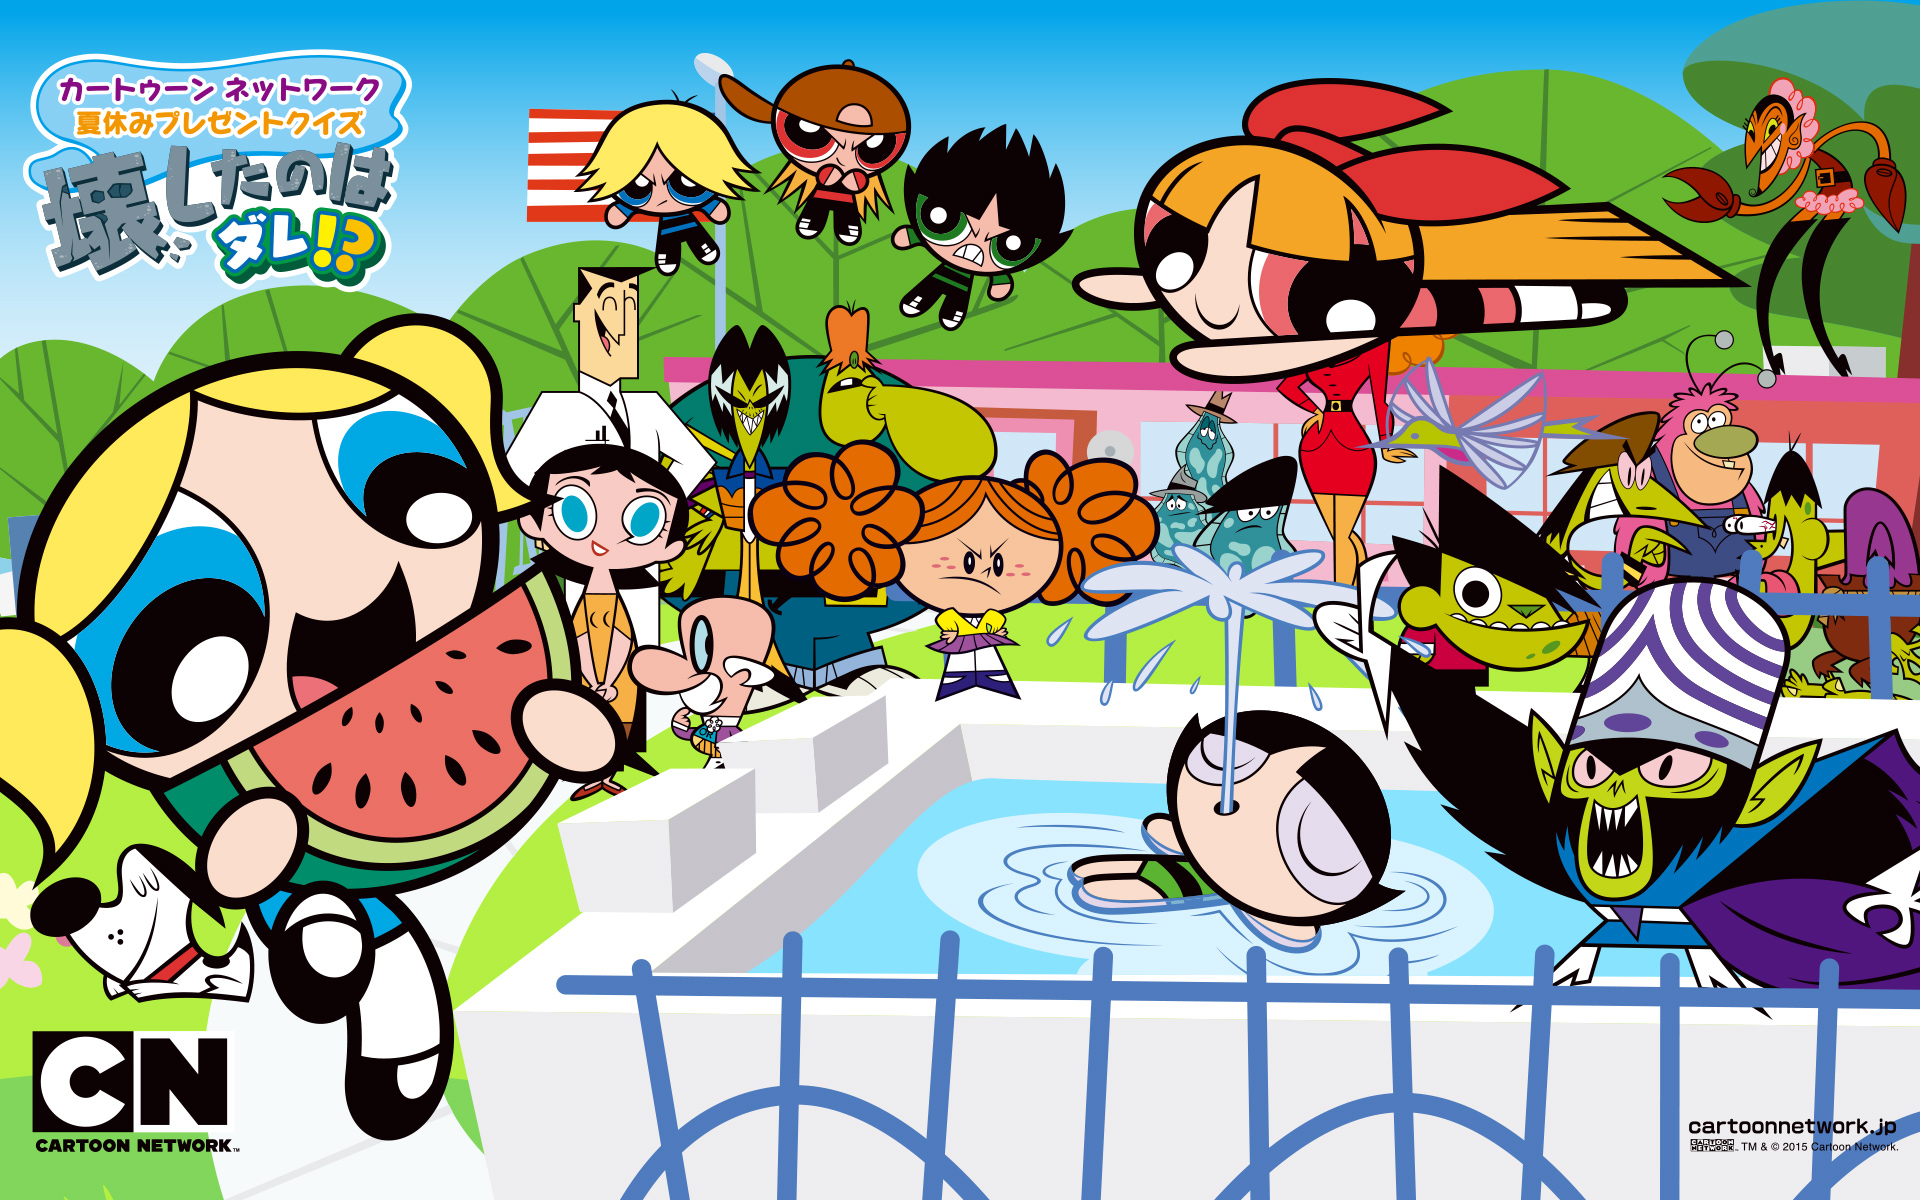 カートゥーン ネットワーク 夏休みプレゼントクイズ 壊したのはダレ カートゥーン ネットワーク 海外アニメと無料ゲームや動画なら Cartoon Network